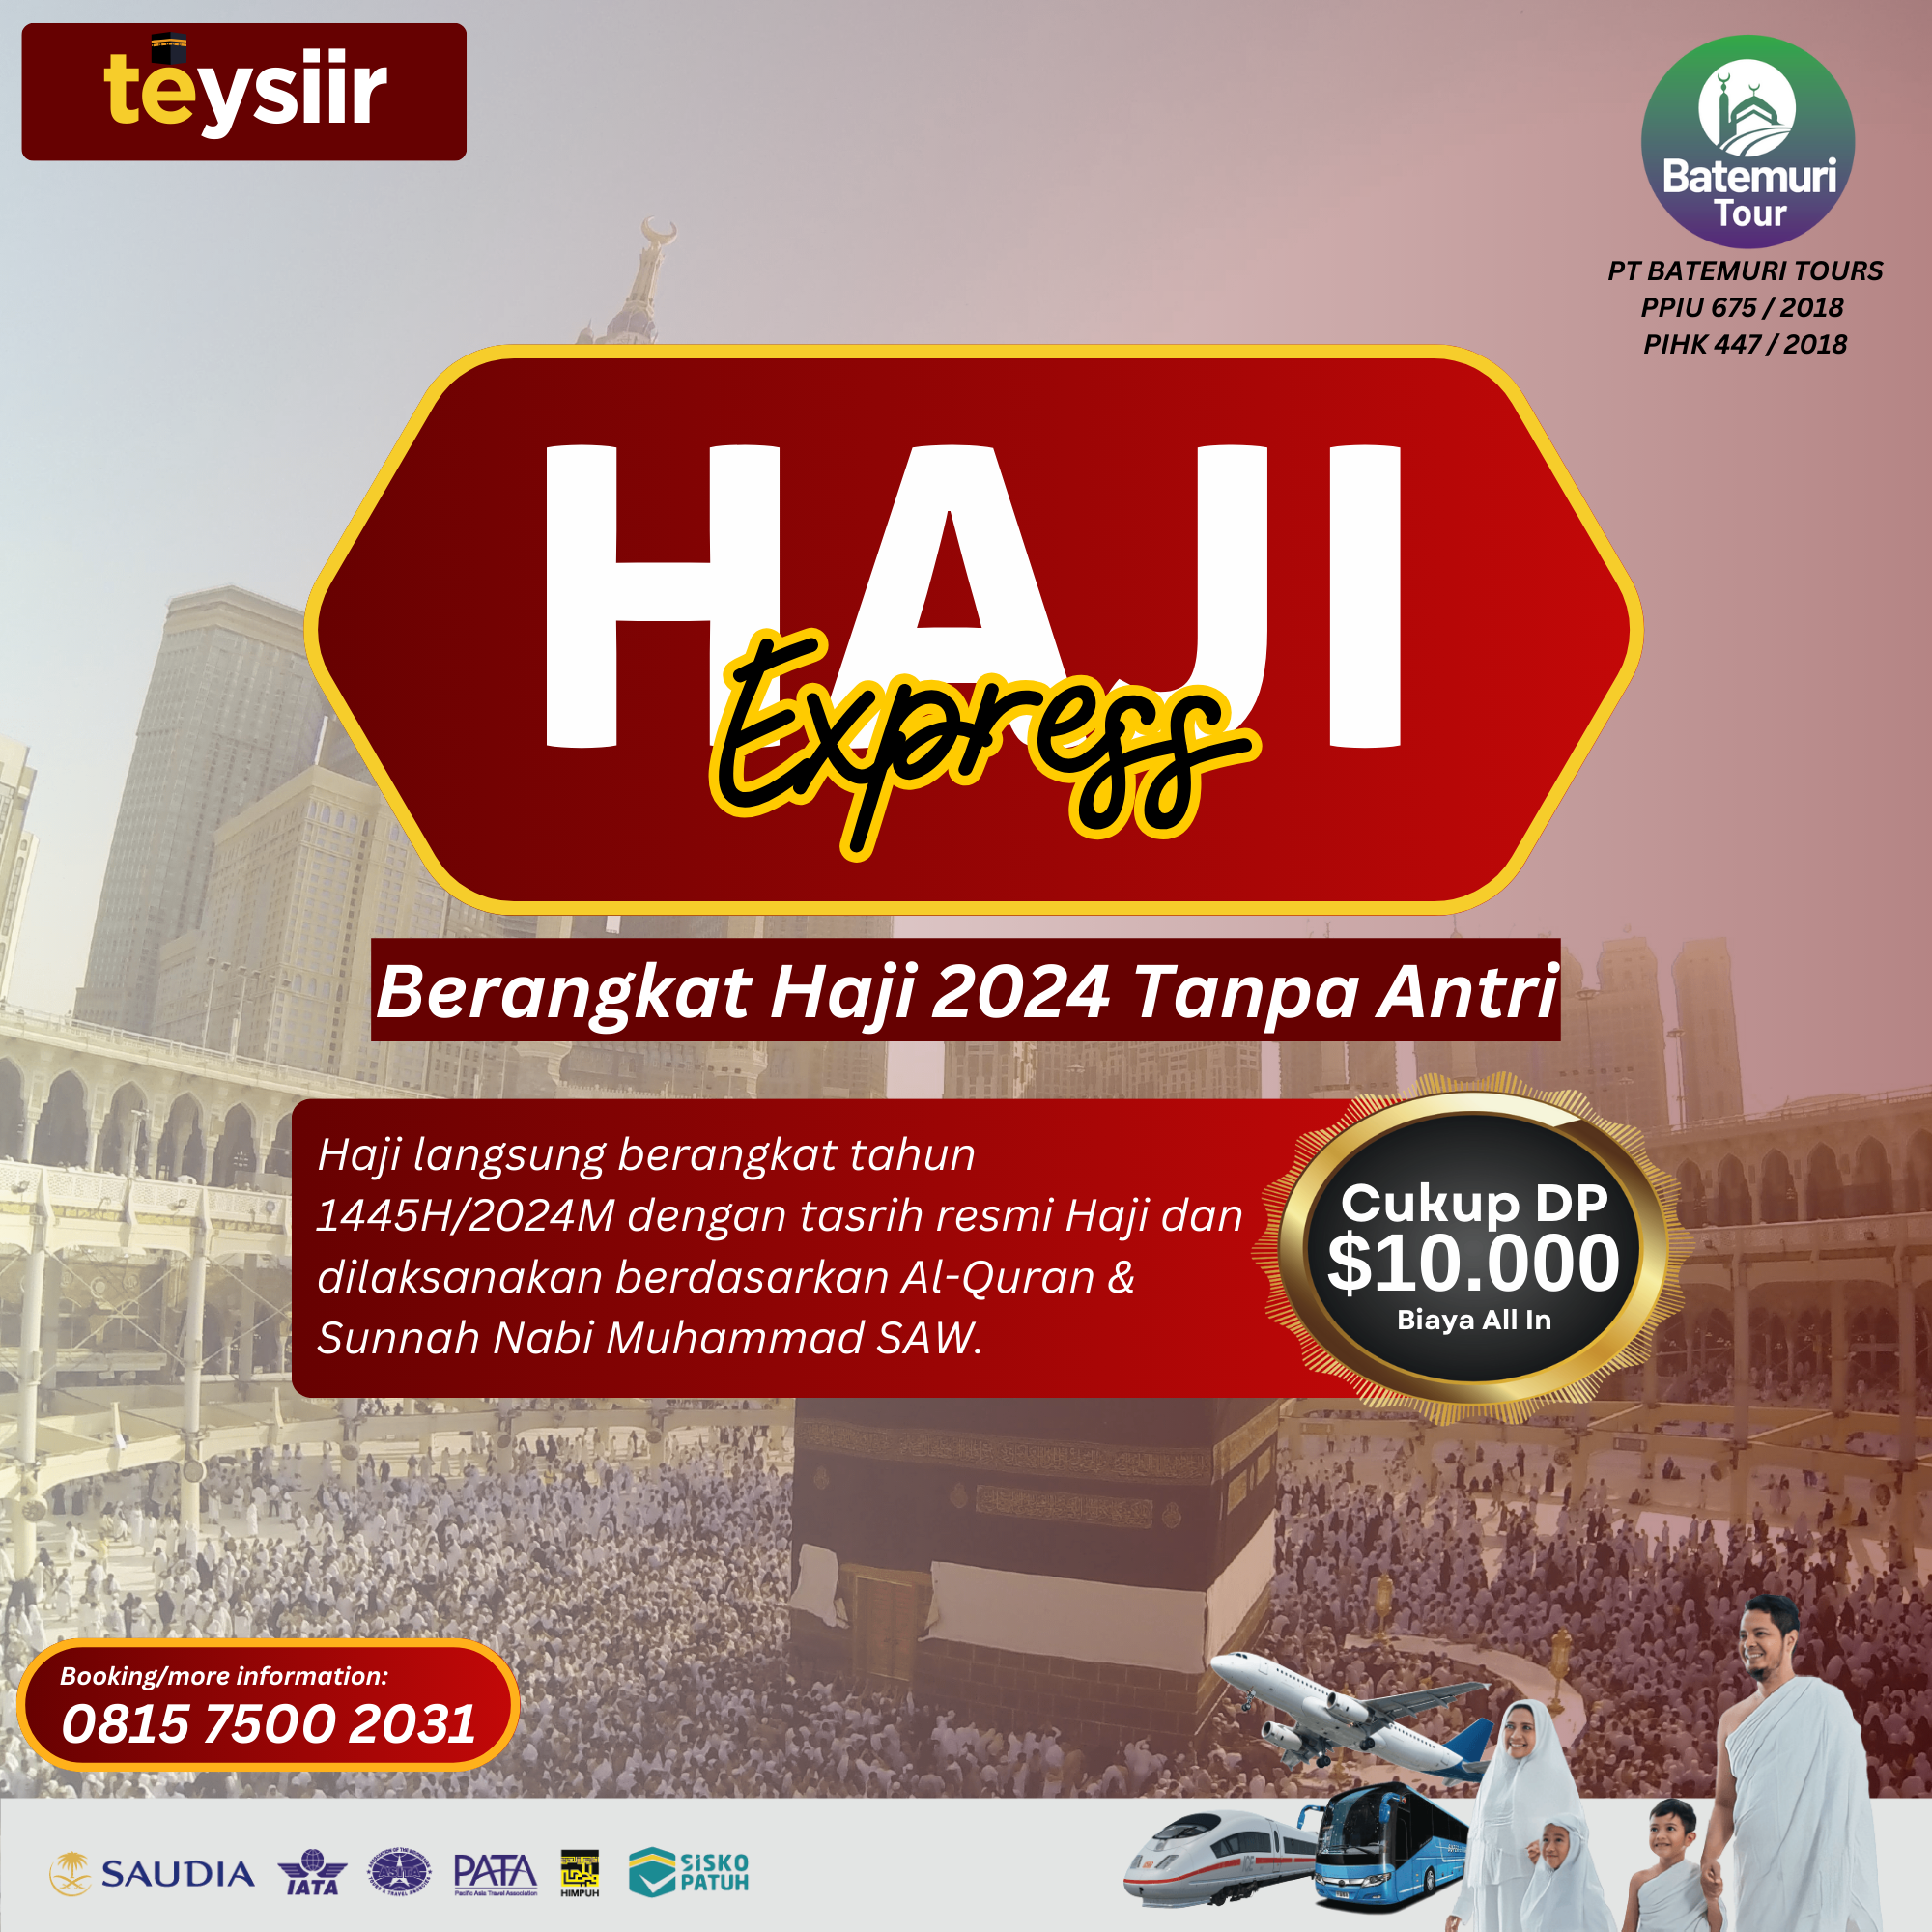 Promo Haji Express - Berangkat Haji 1445H Tanpa Antri dari Indonesia, Maktab VIP